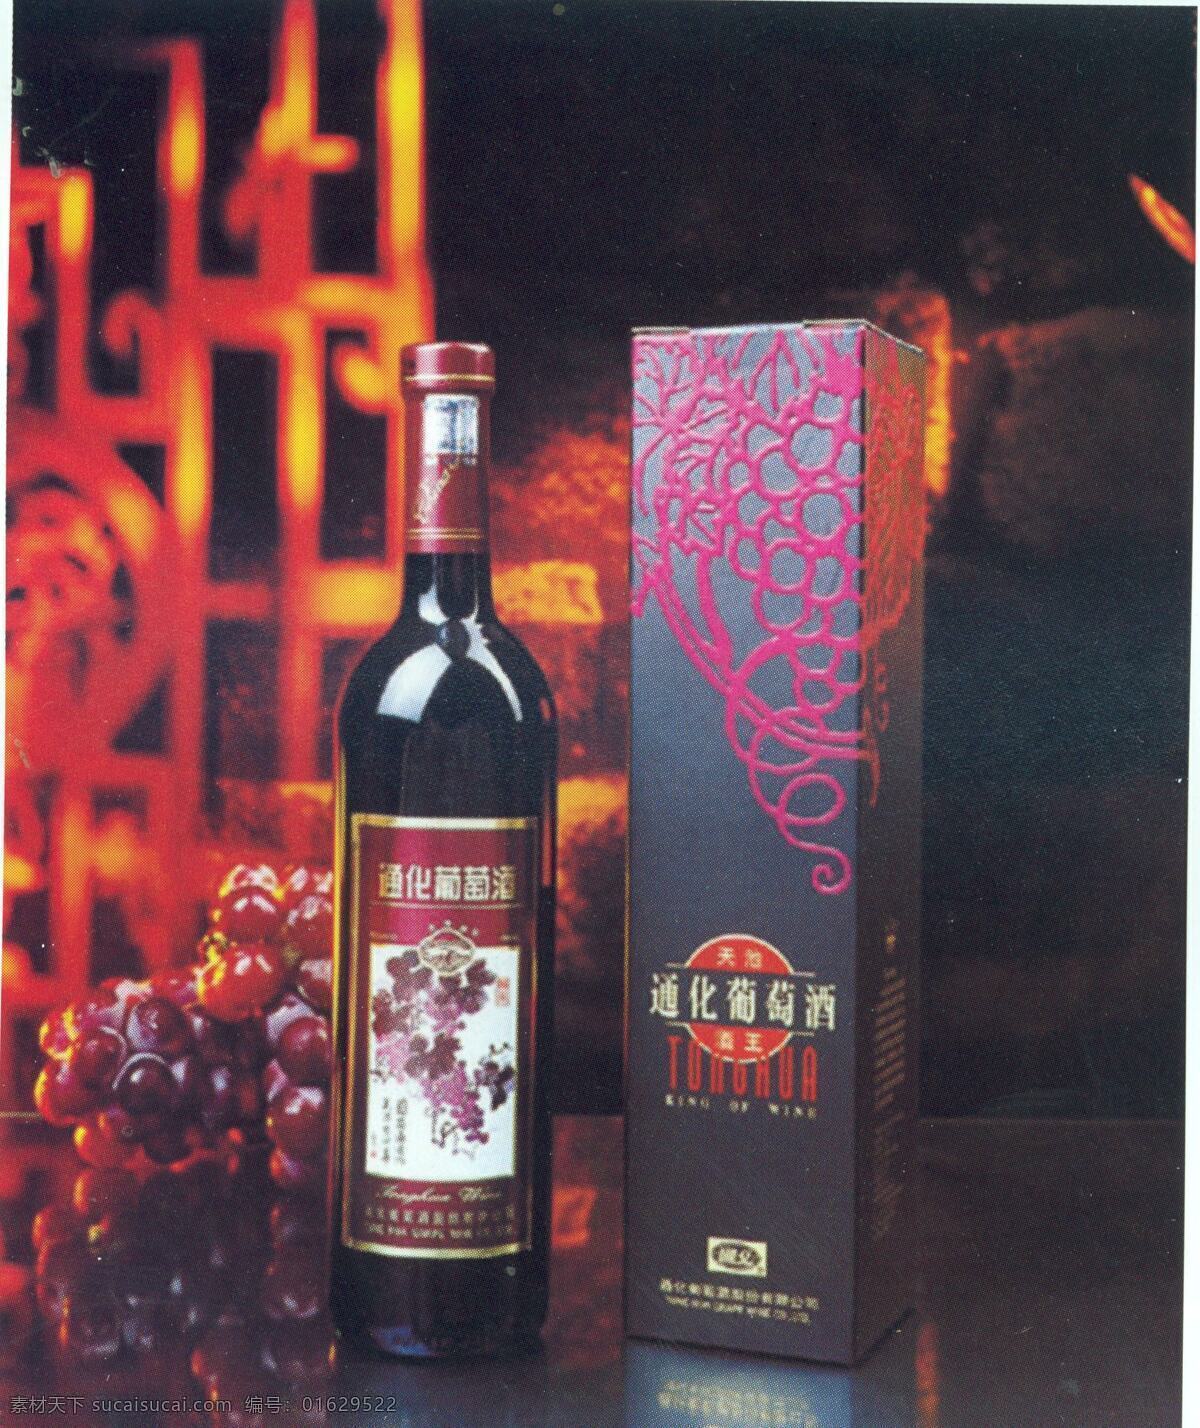 葡萄酒 盒装瓶装 组合 包装设计 组合包装设计 设计素材 组合套装 平面设计 黑色